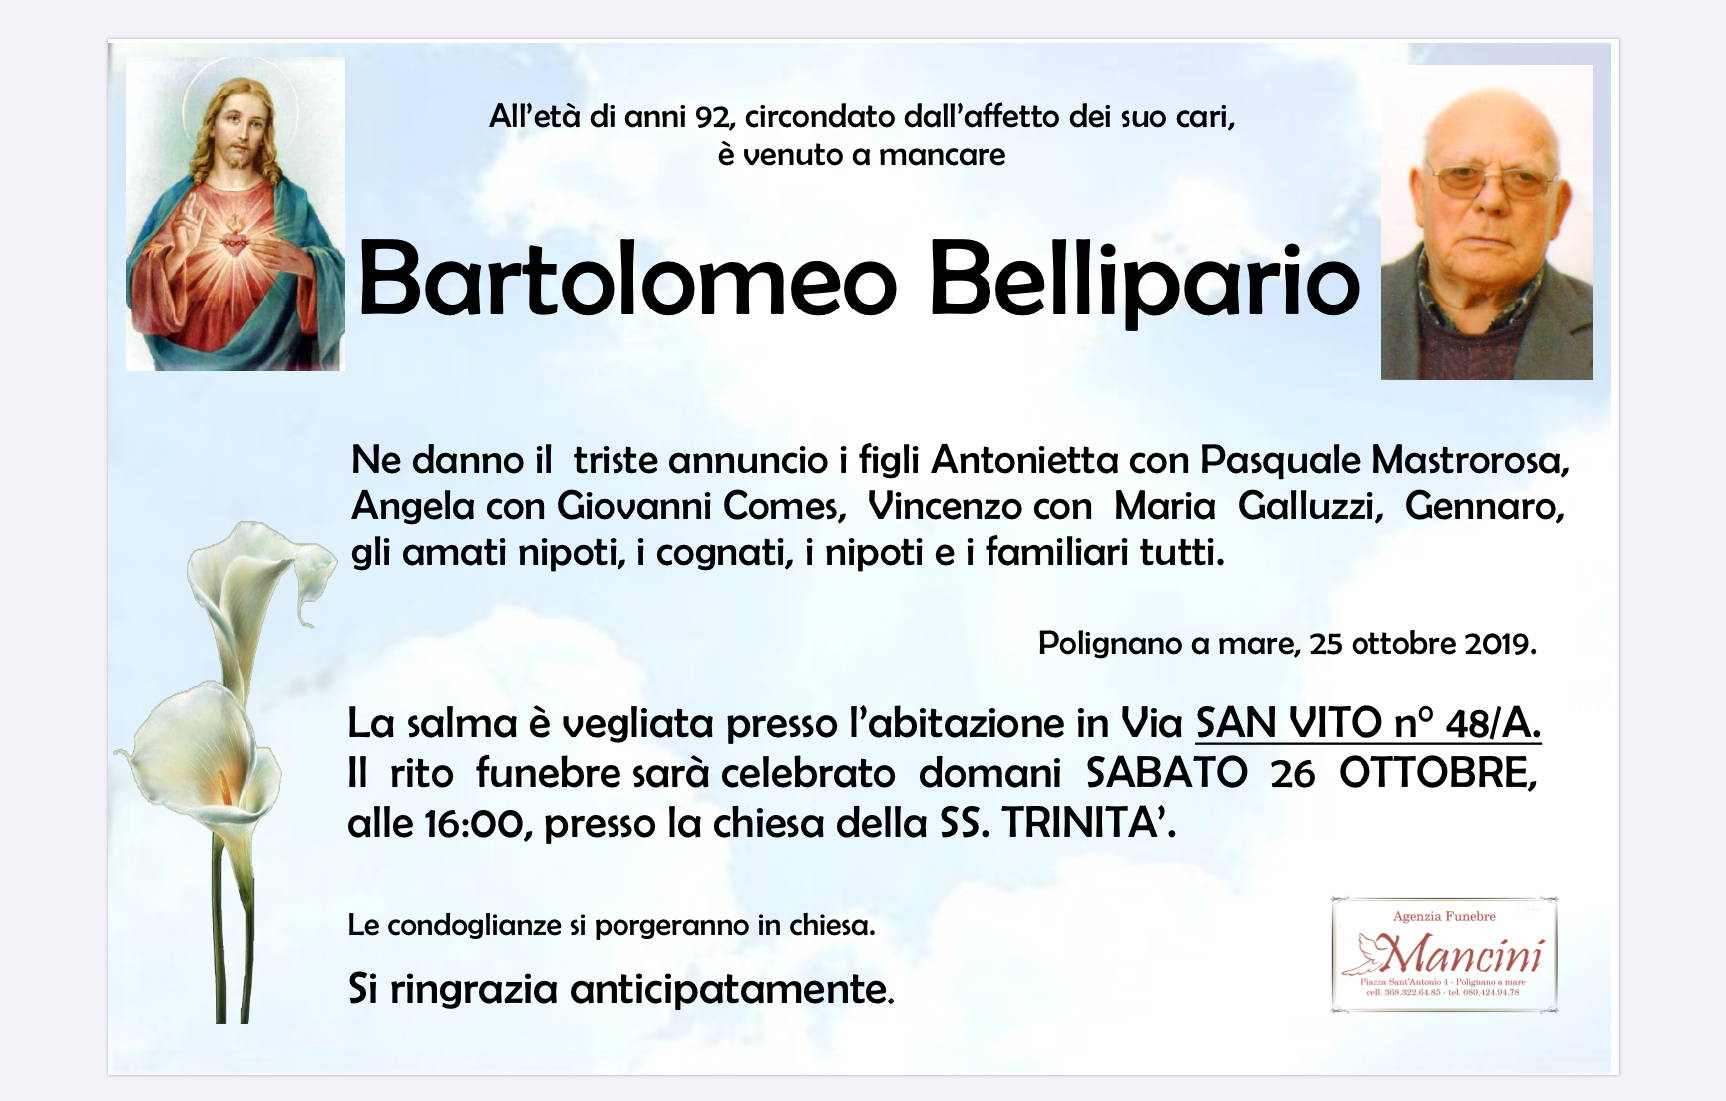 Bartolomeo Bellipario